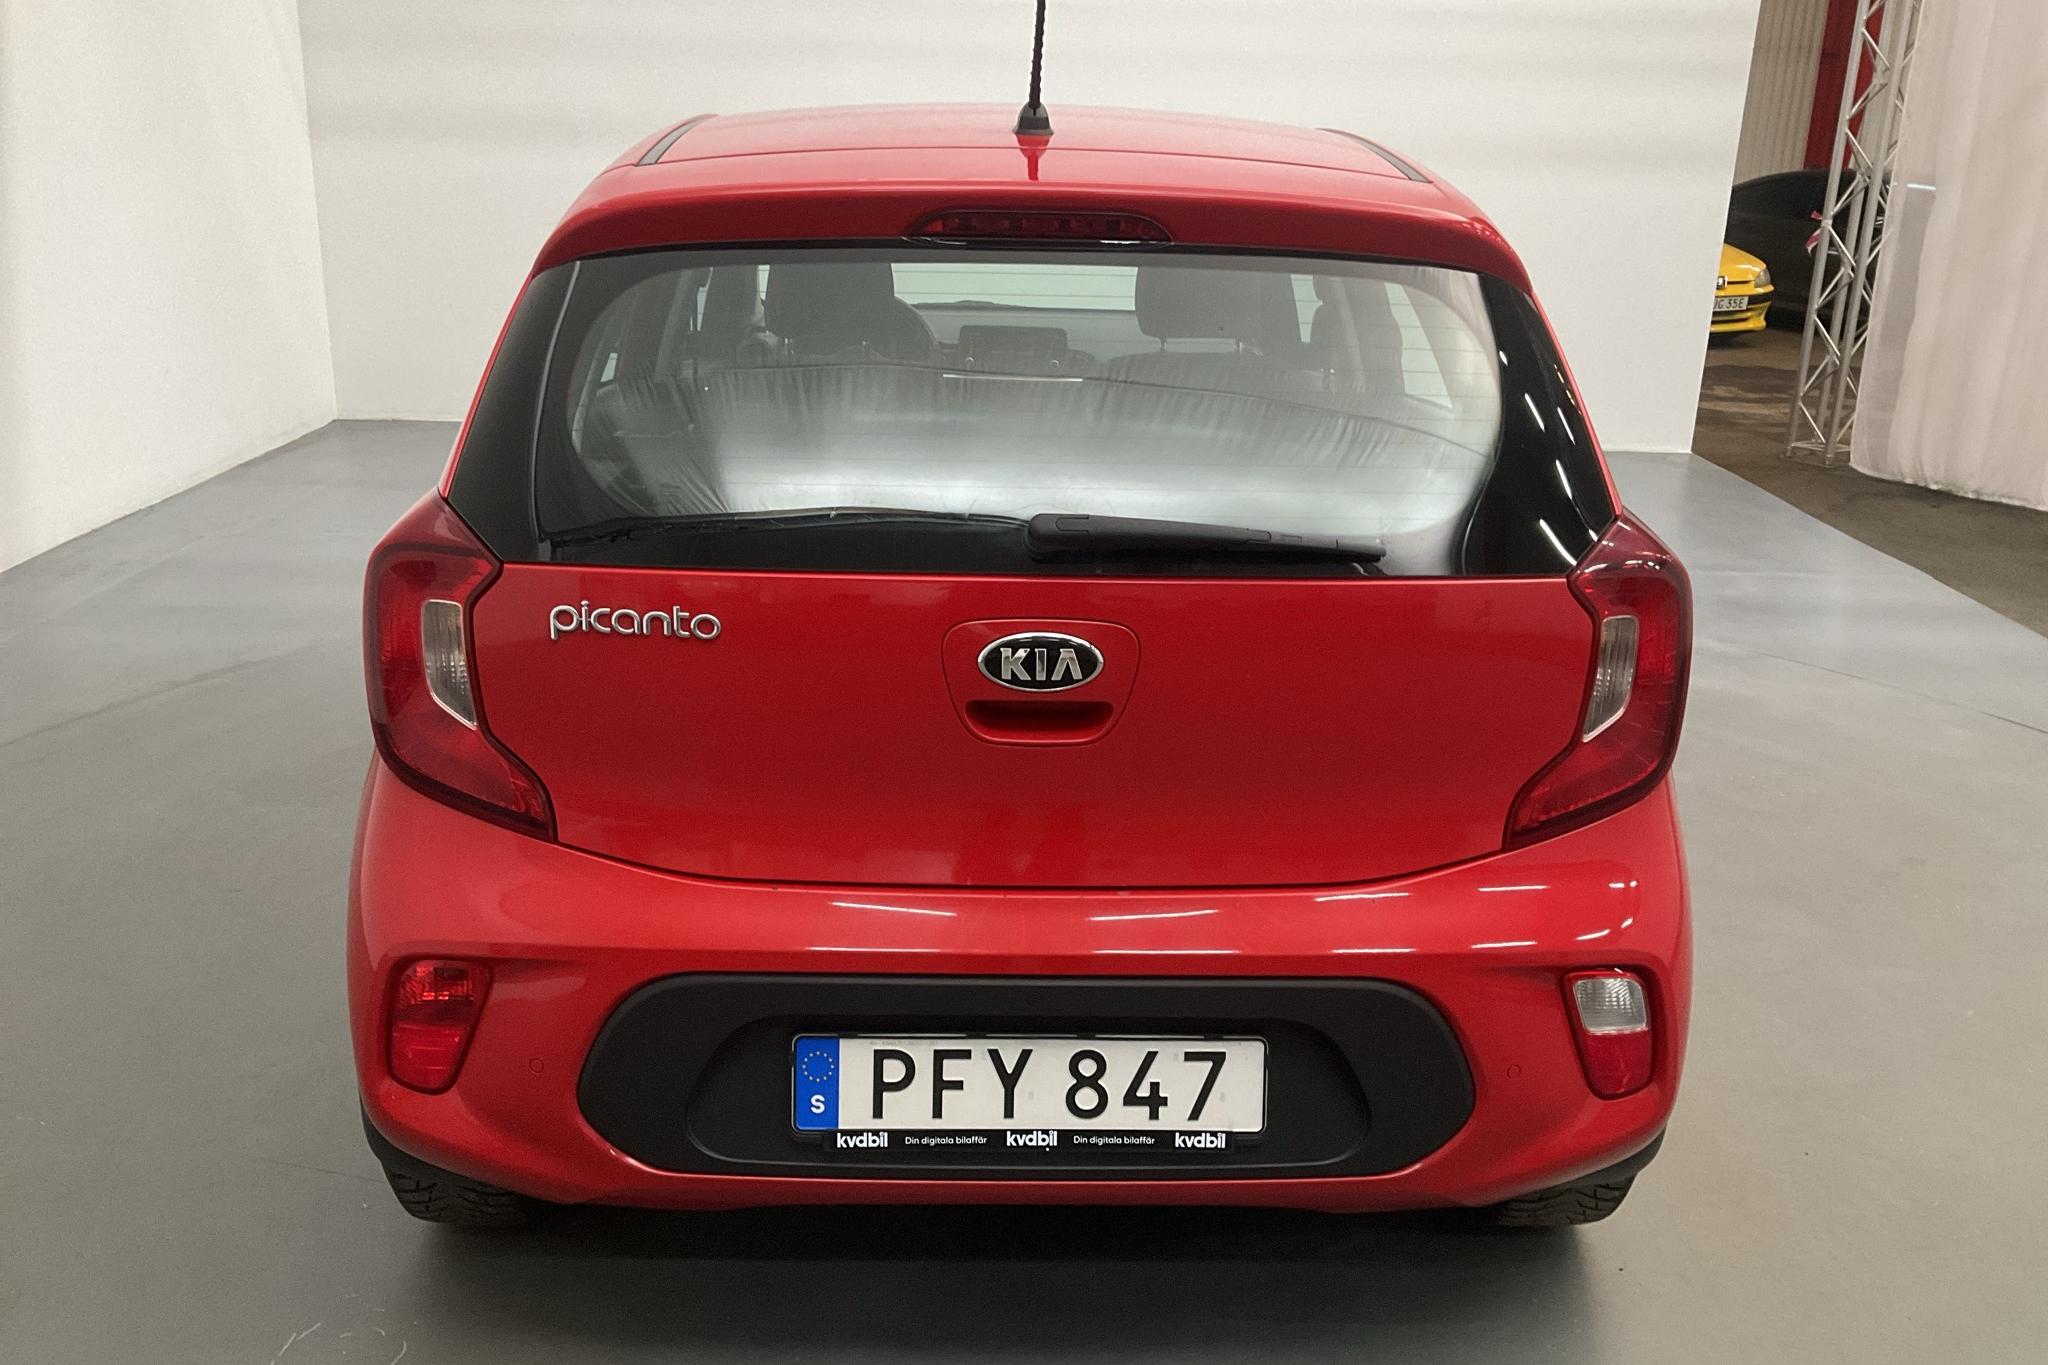 KIA Picanto 1.2 5dr (84hk) - 54 840 km - Automatic - red - 2018